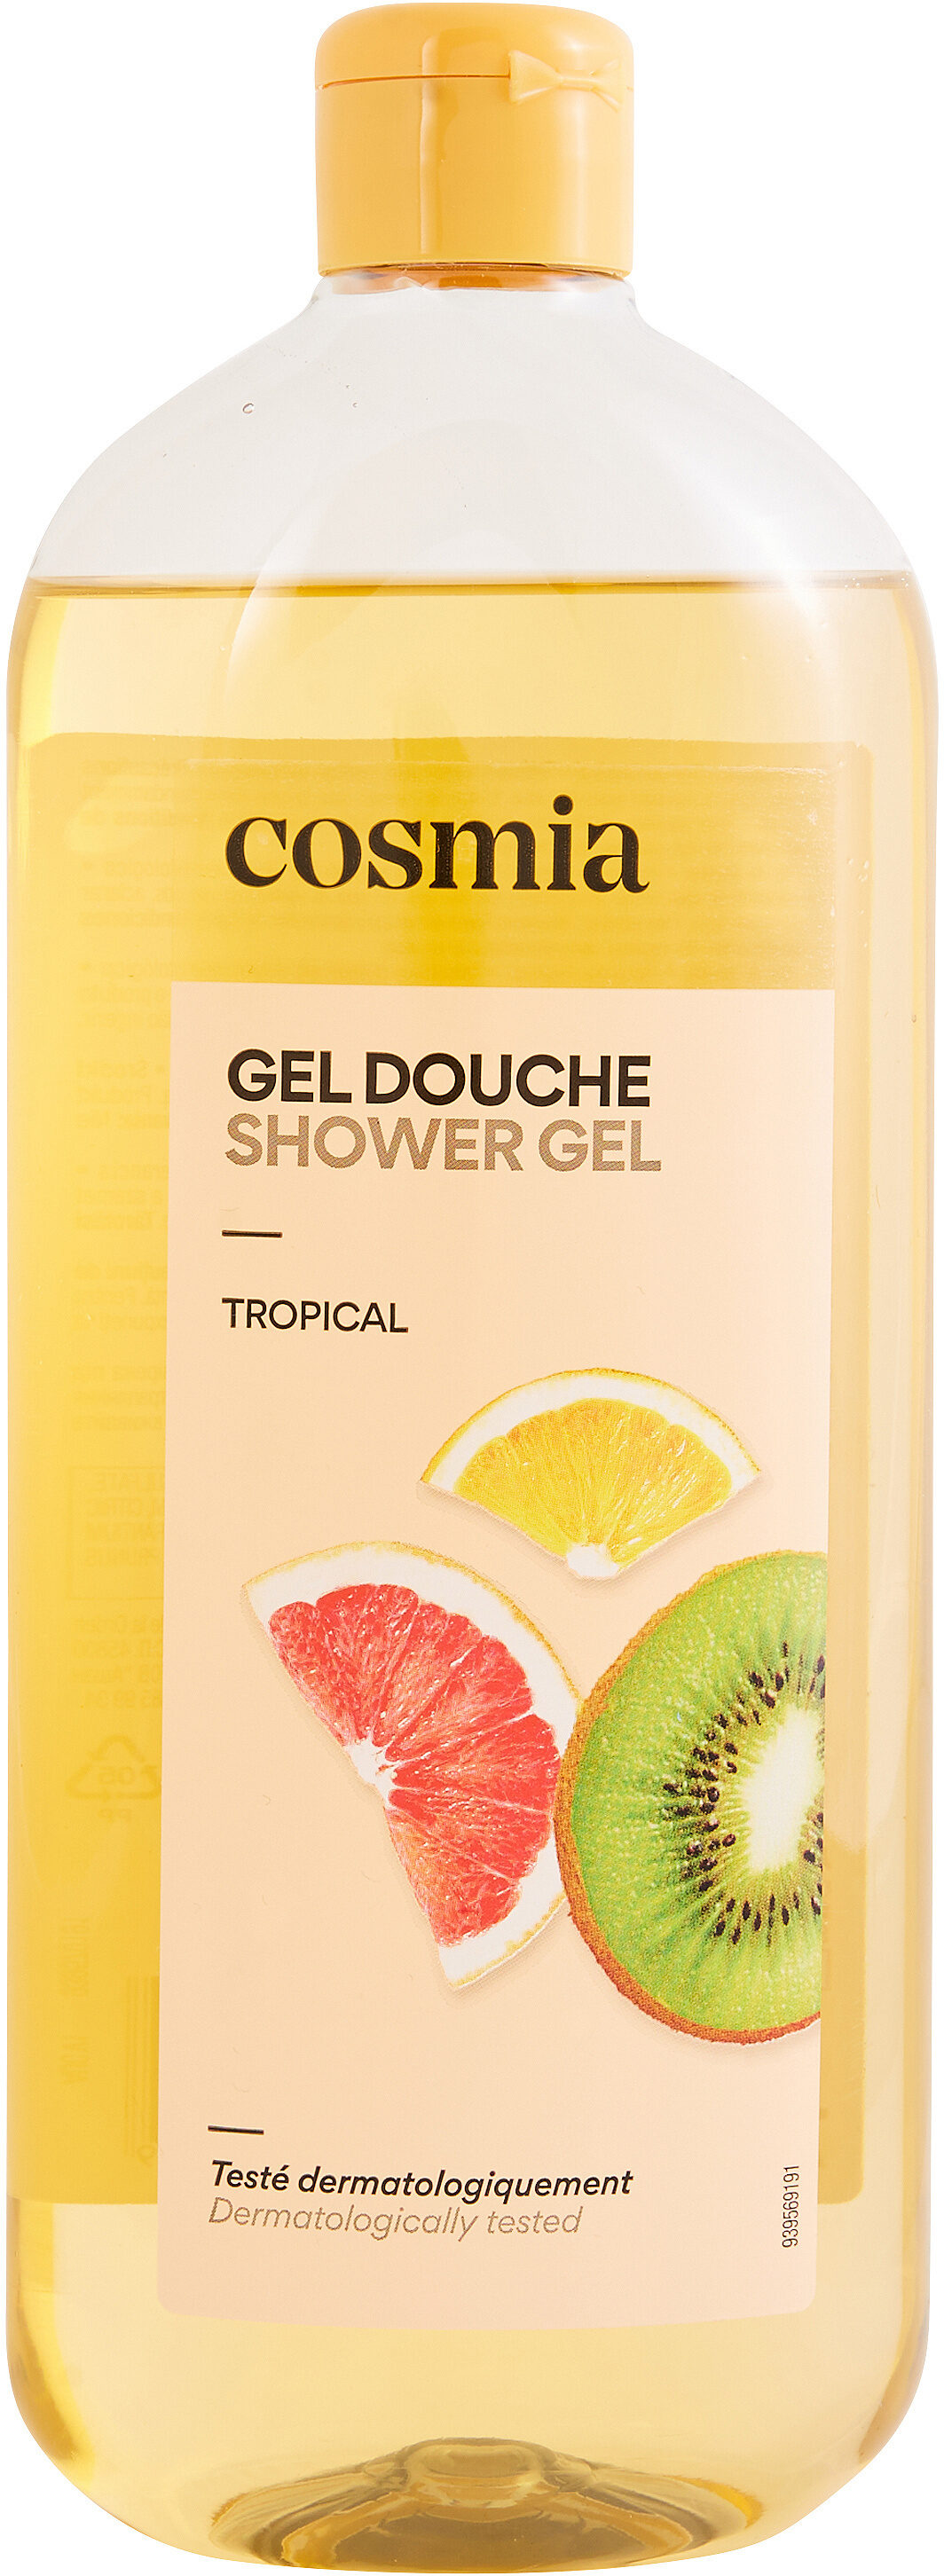 Shower gel tropical - उत्पाद - fr